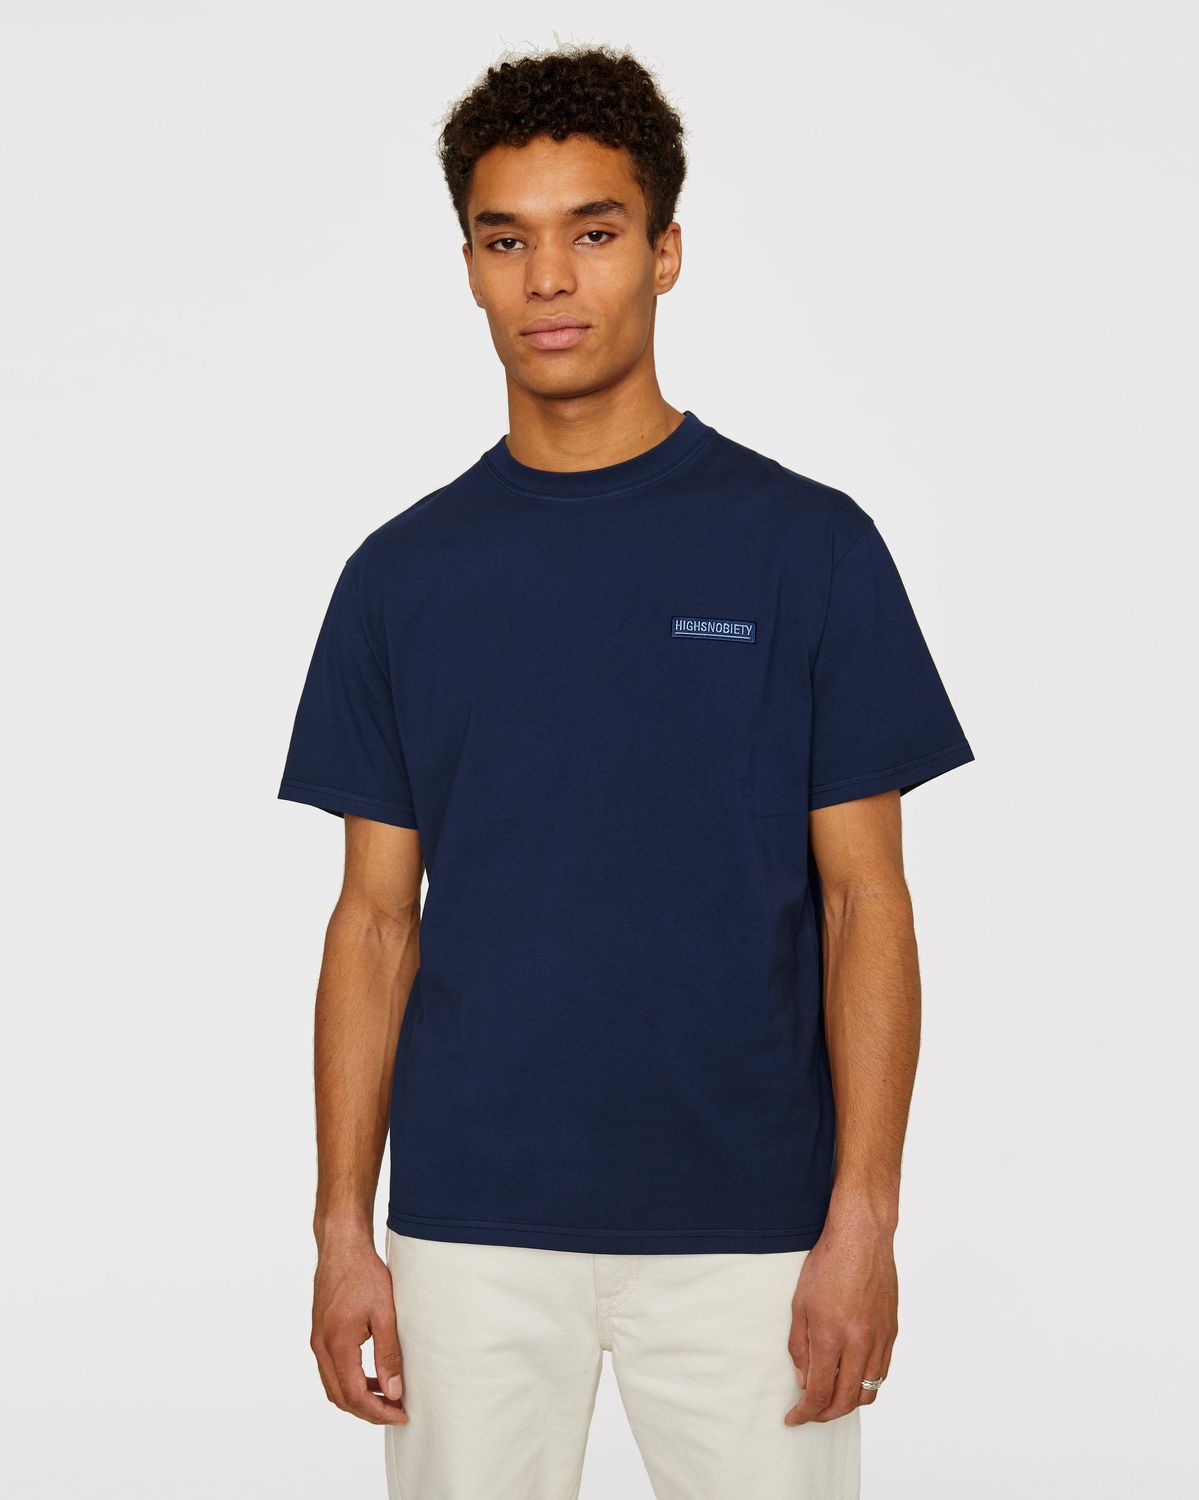 Highsnobiety – Staples T-Shirt Navy - Image 2